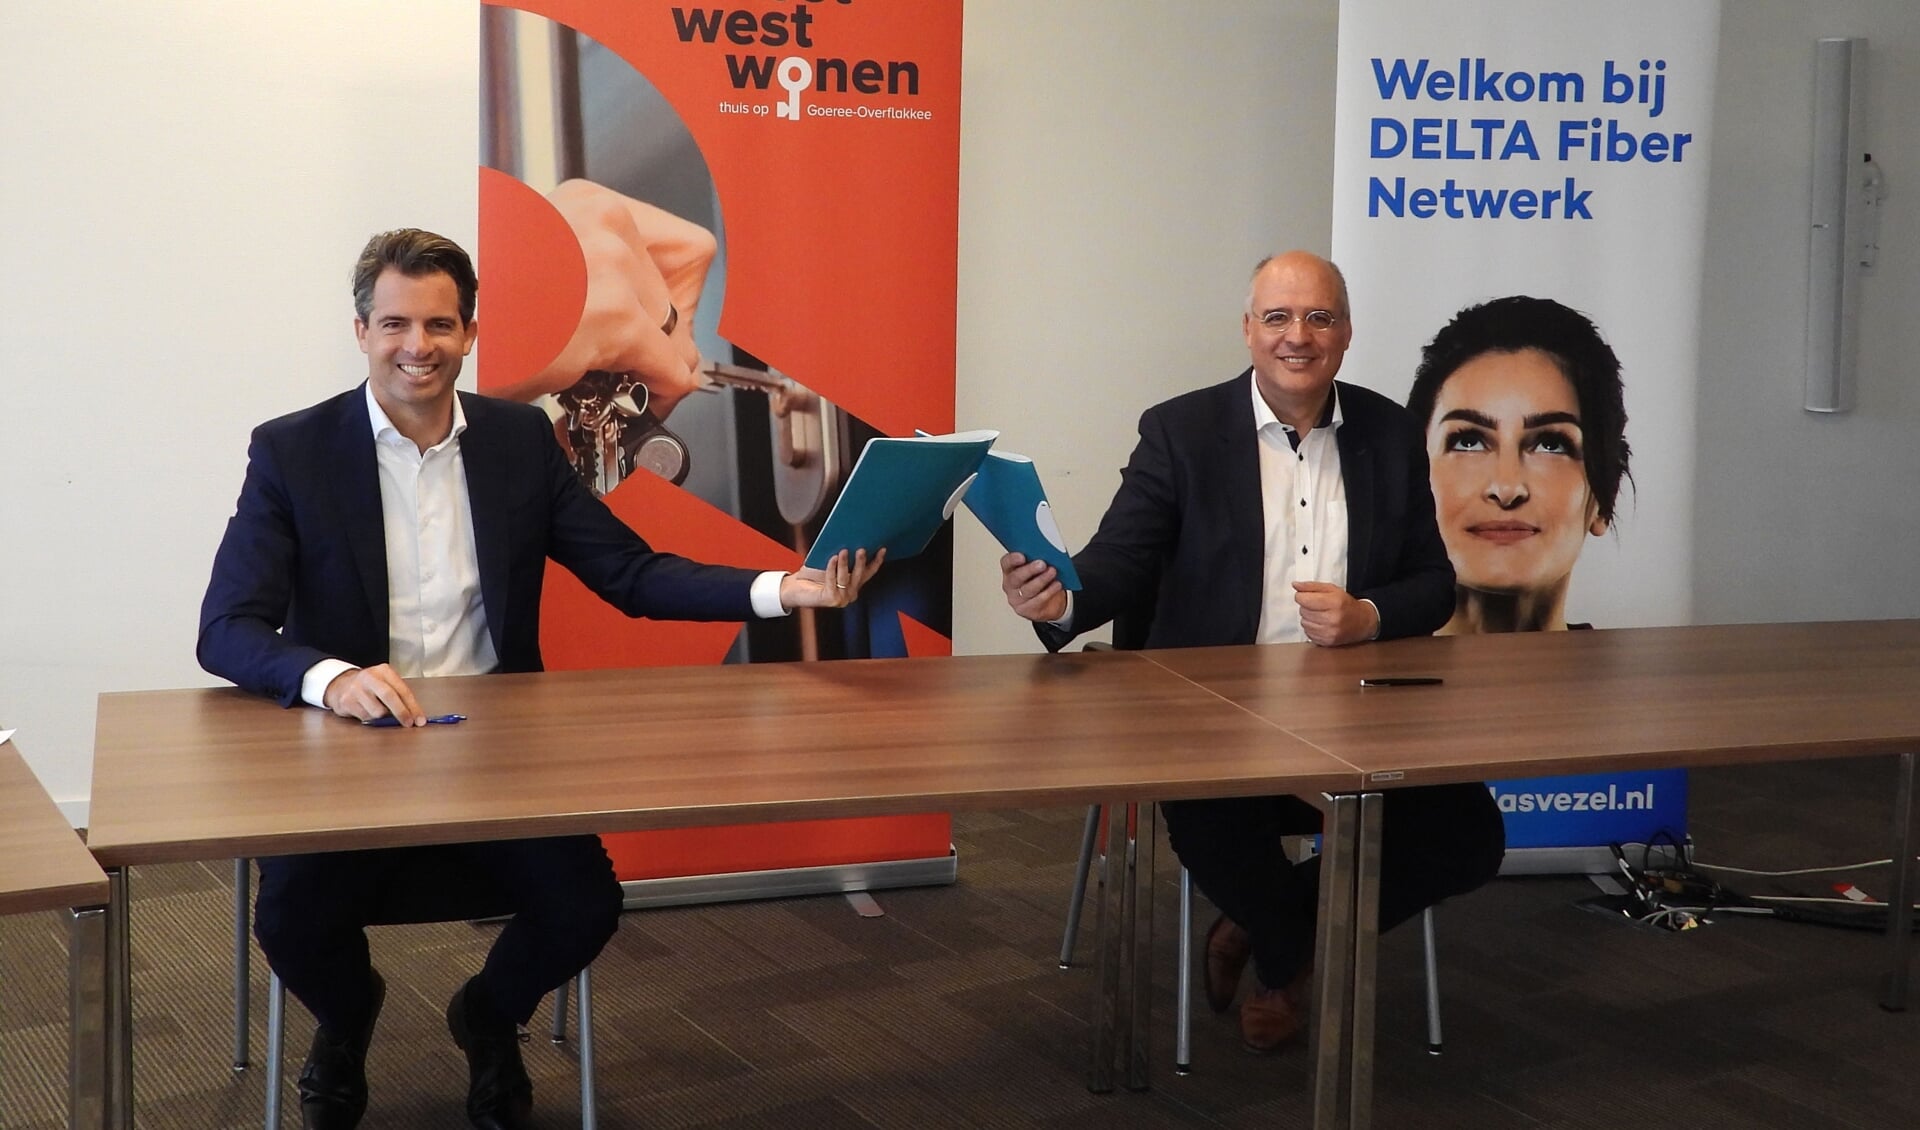 Op de foto van links naar rechts; Michiel Admiraal, DELTA Fiber Netwerk en Kees van Dam, Oost West Wonen. 